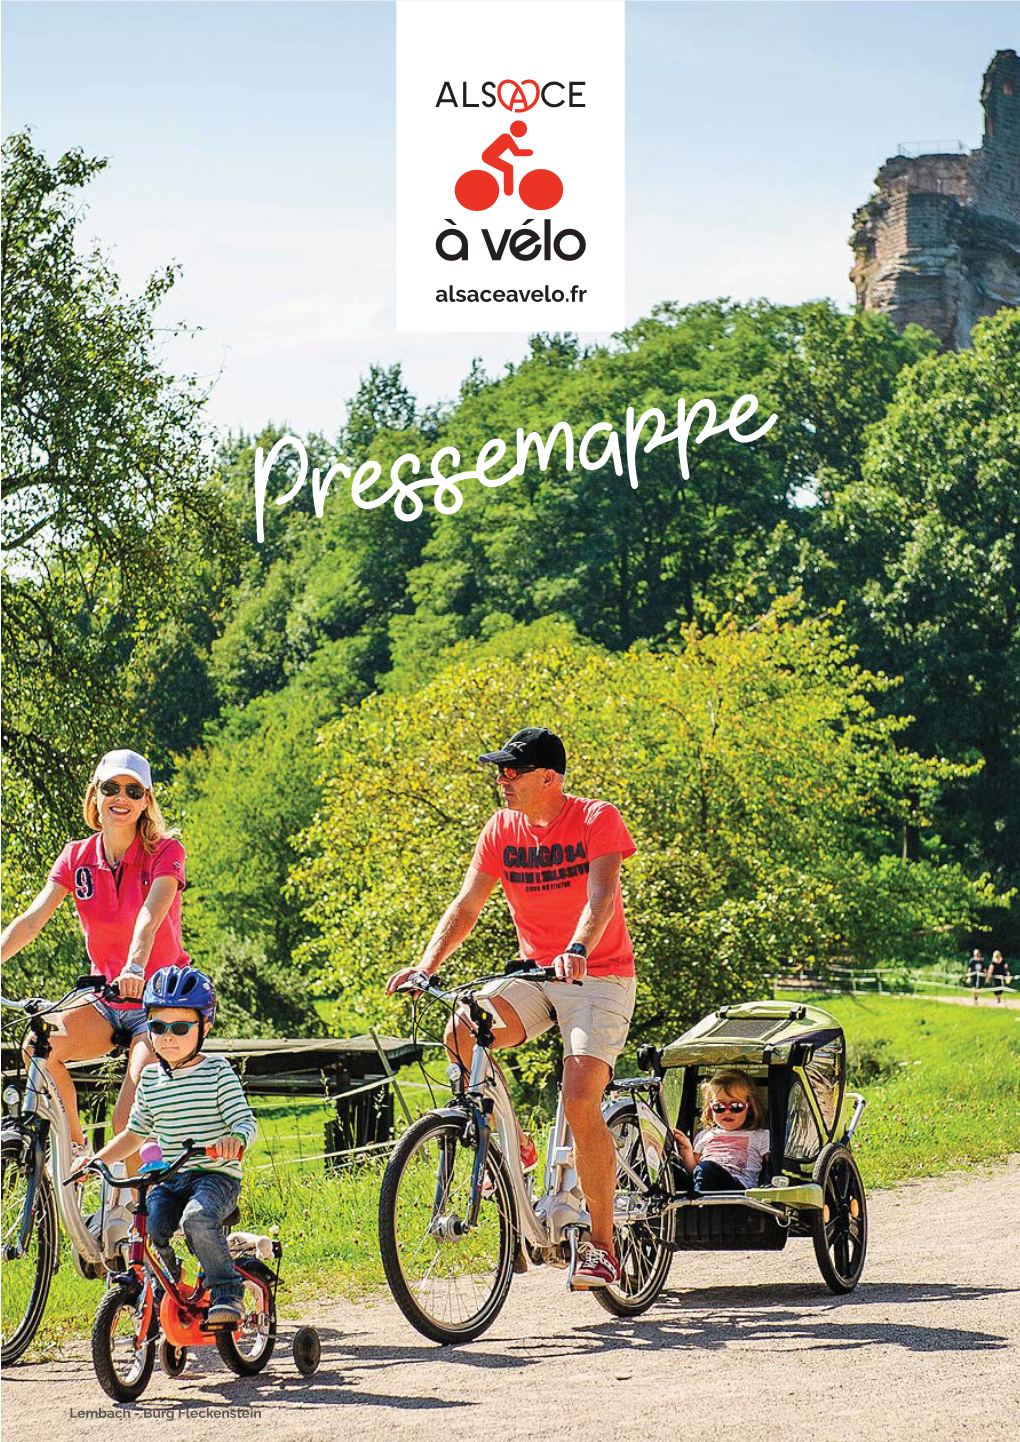 FAHRRADTOURISMUS IM ELSASS • Die Elsässische Tourismusindustrie: Ein XXL-Potential • Das Gemeinschaftsprojekt "Alsace À Vélo" (Dt.: Radfahren Im Elsass)